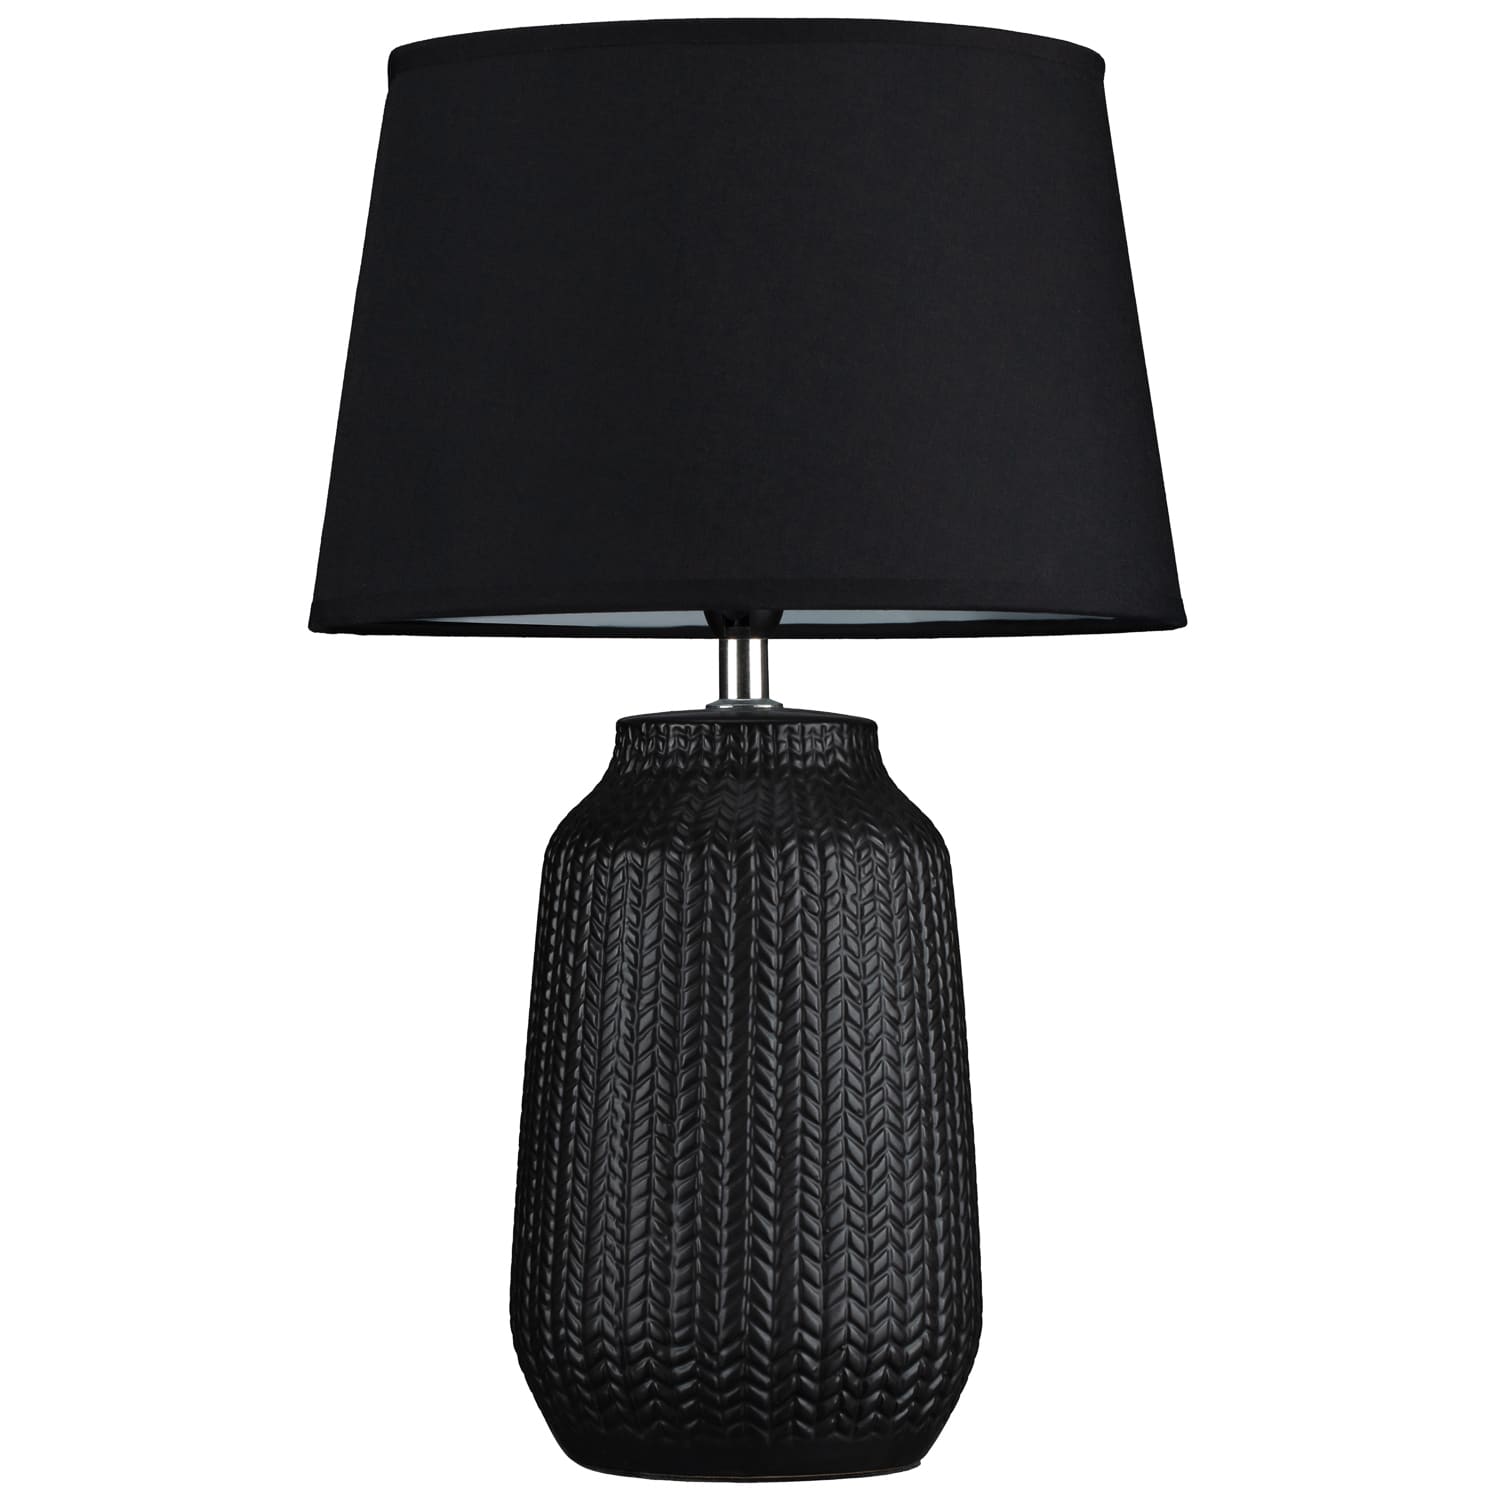 Black Embossed Ceramic Table Lamp